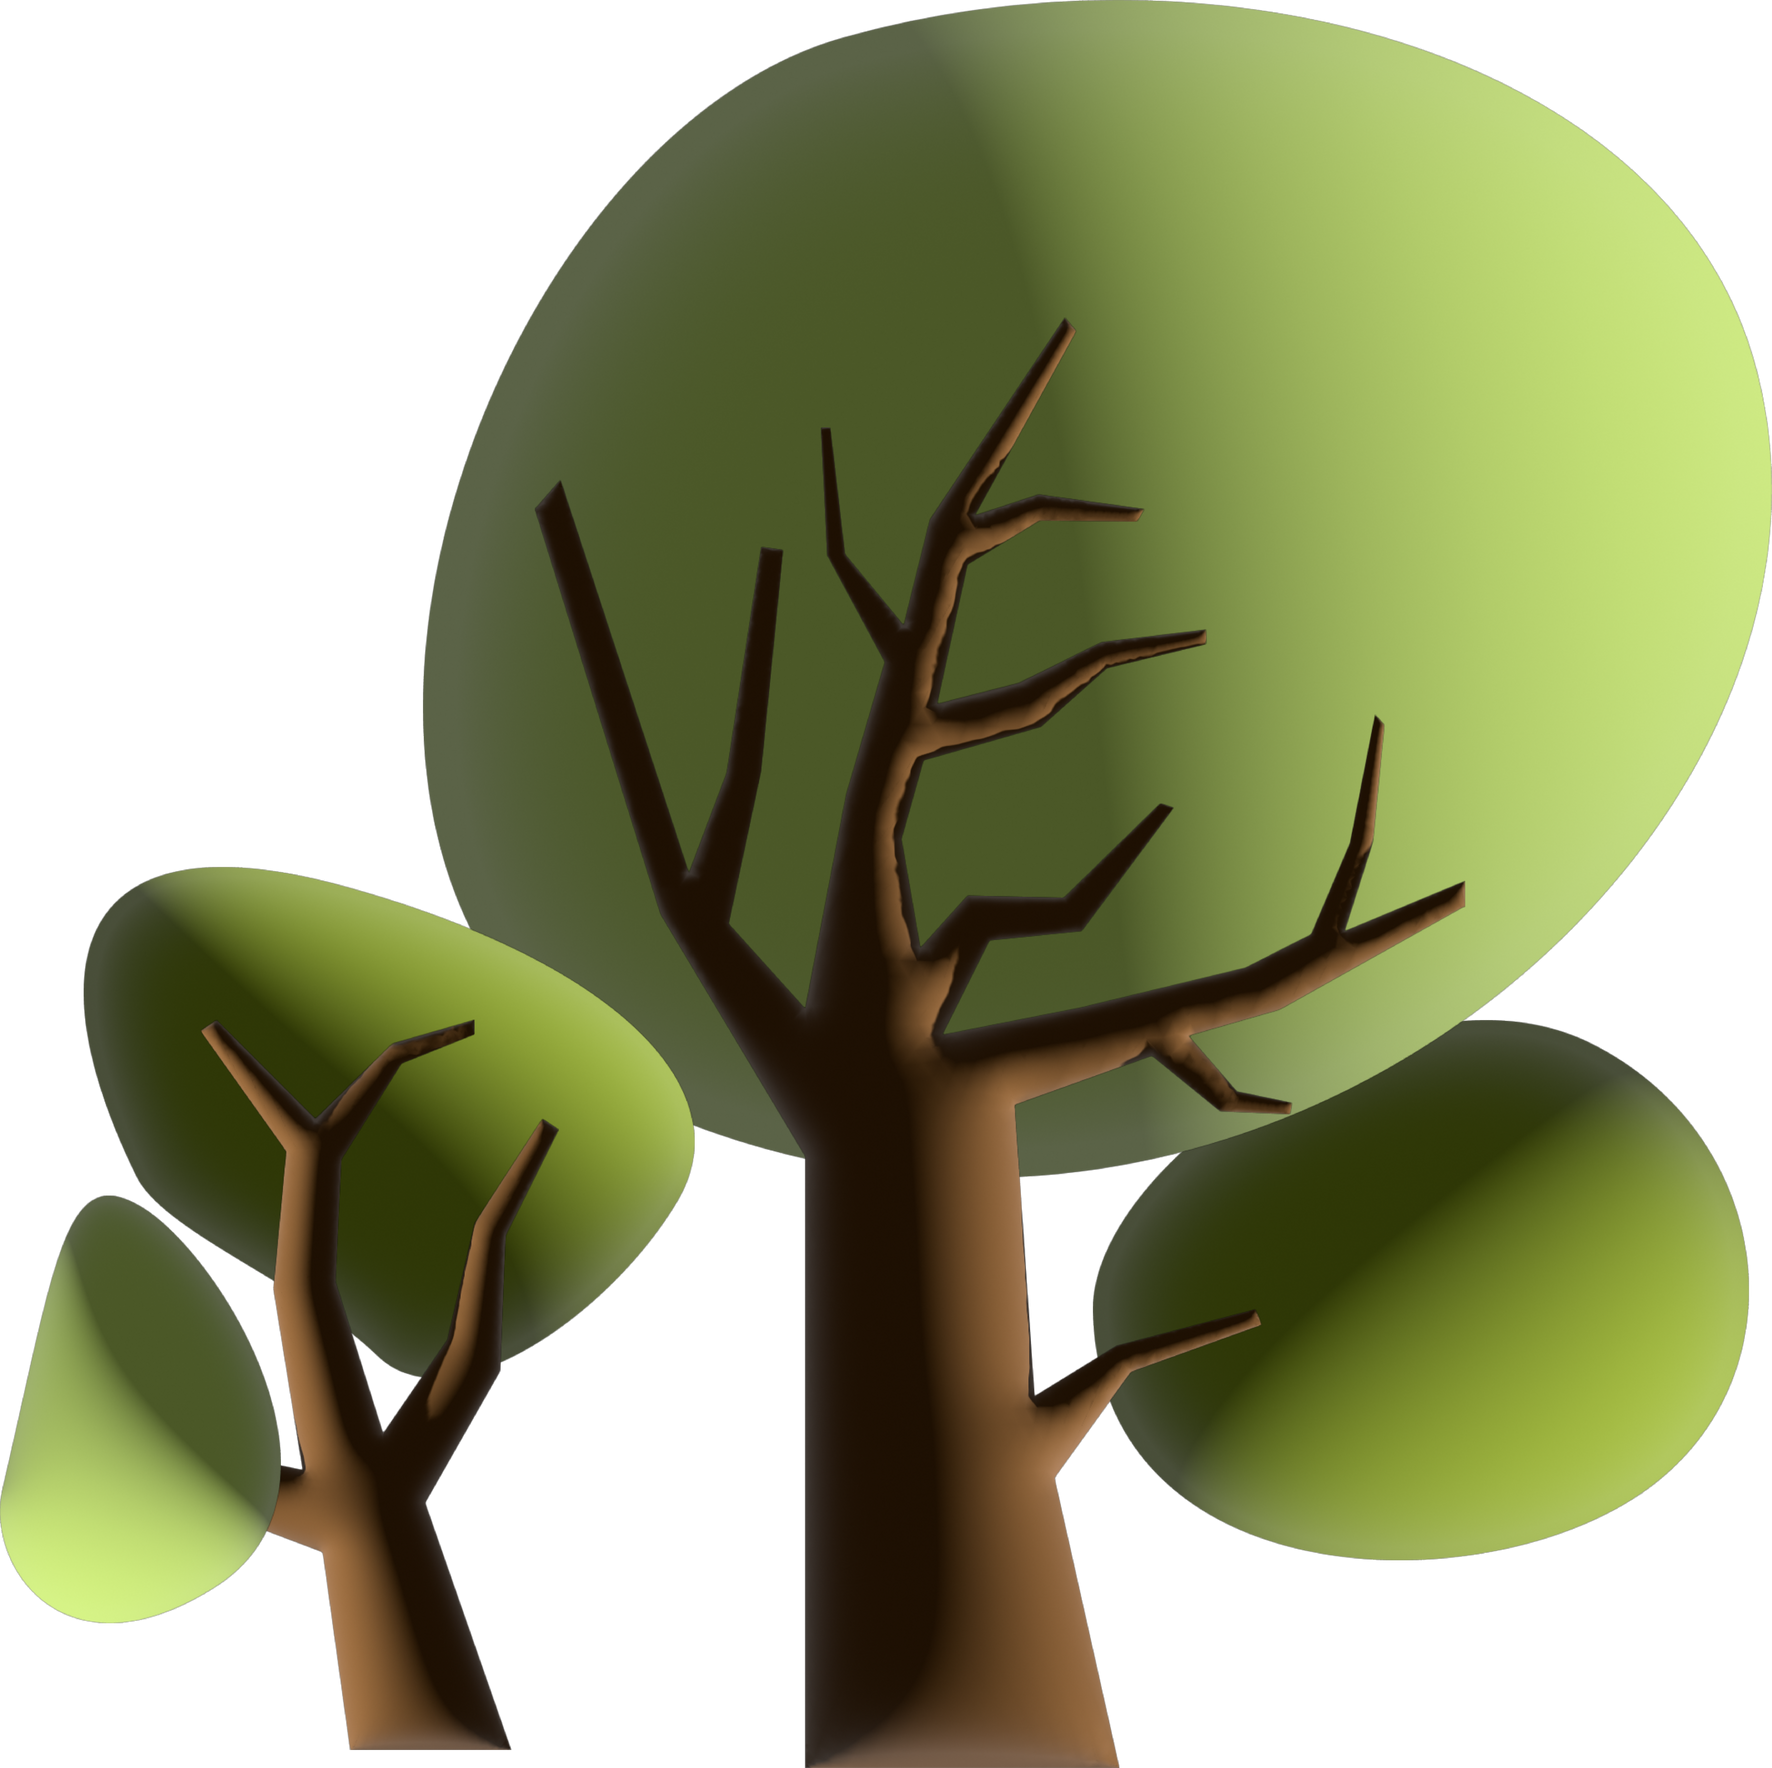 Tree 3D